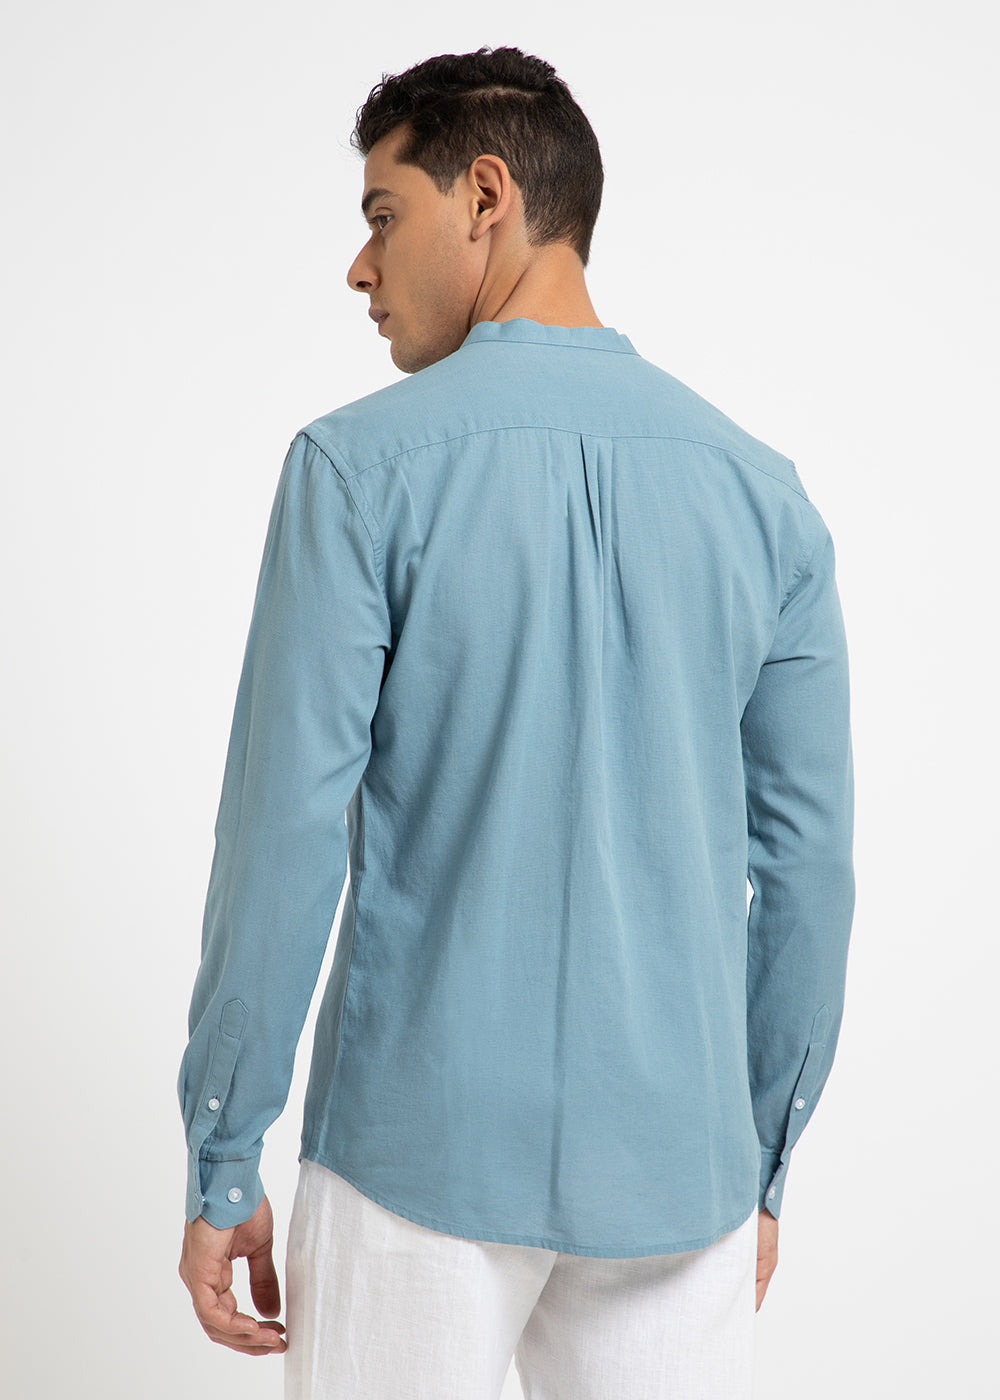 Scuba Blue Cotton Linen Shirt